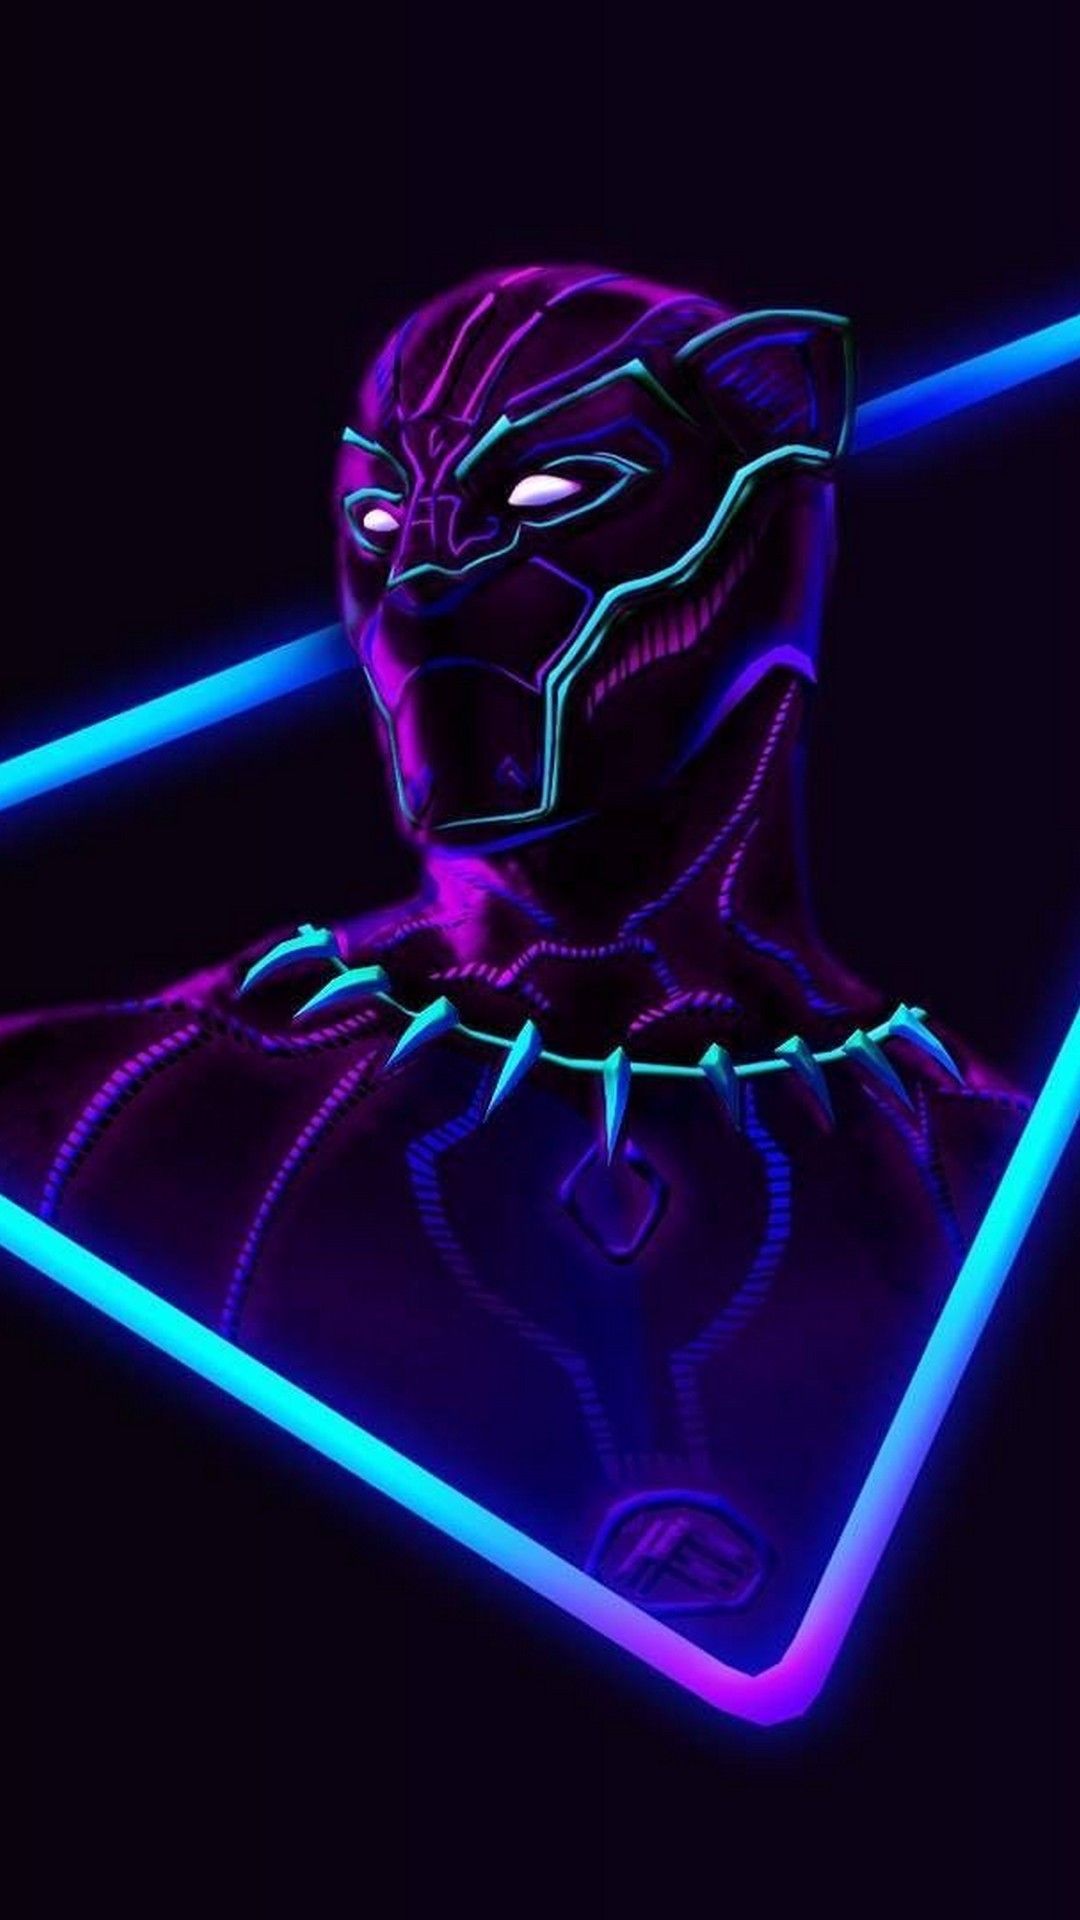 fond d'écran avengers pour android,néon,violet,violet,lumière,bleu électrique